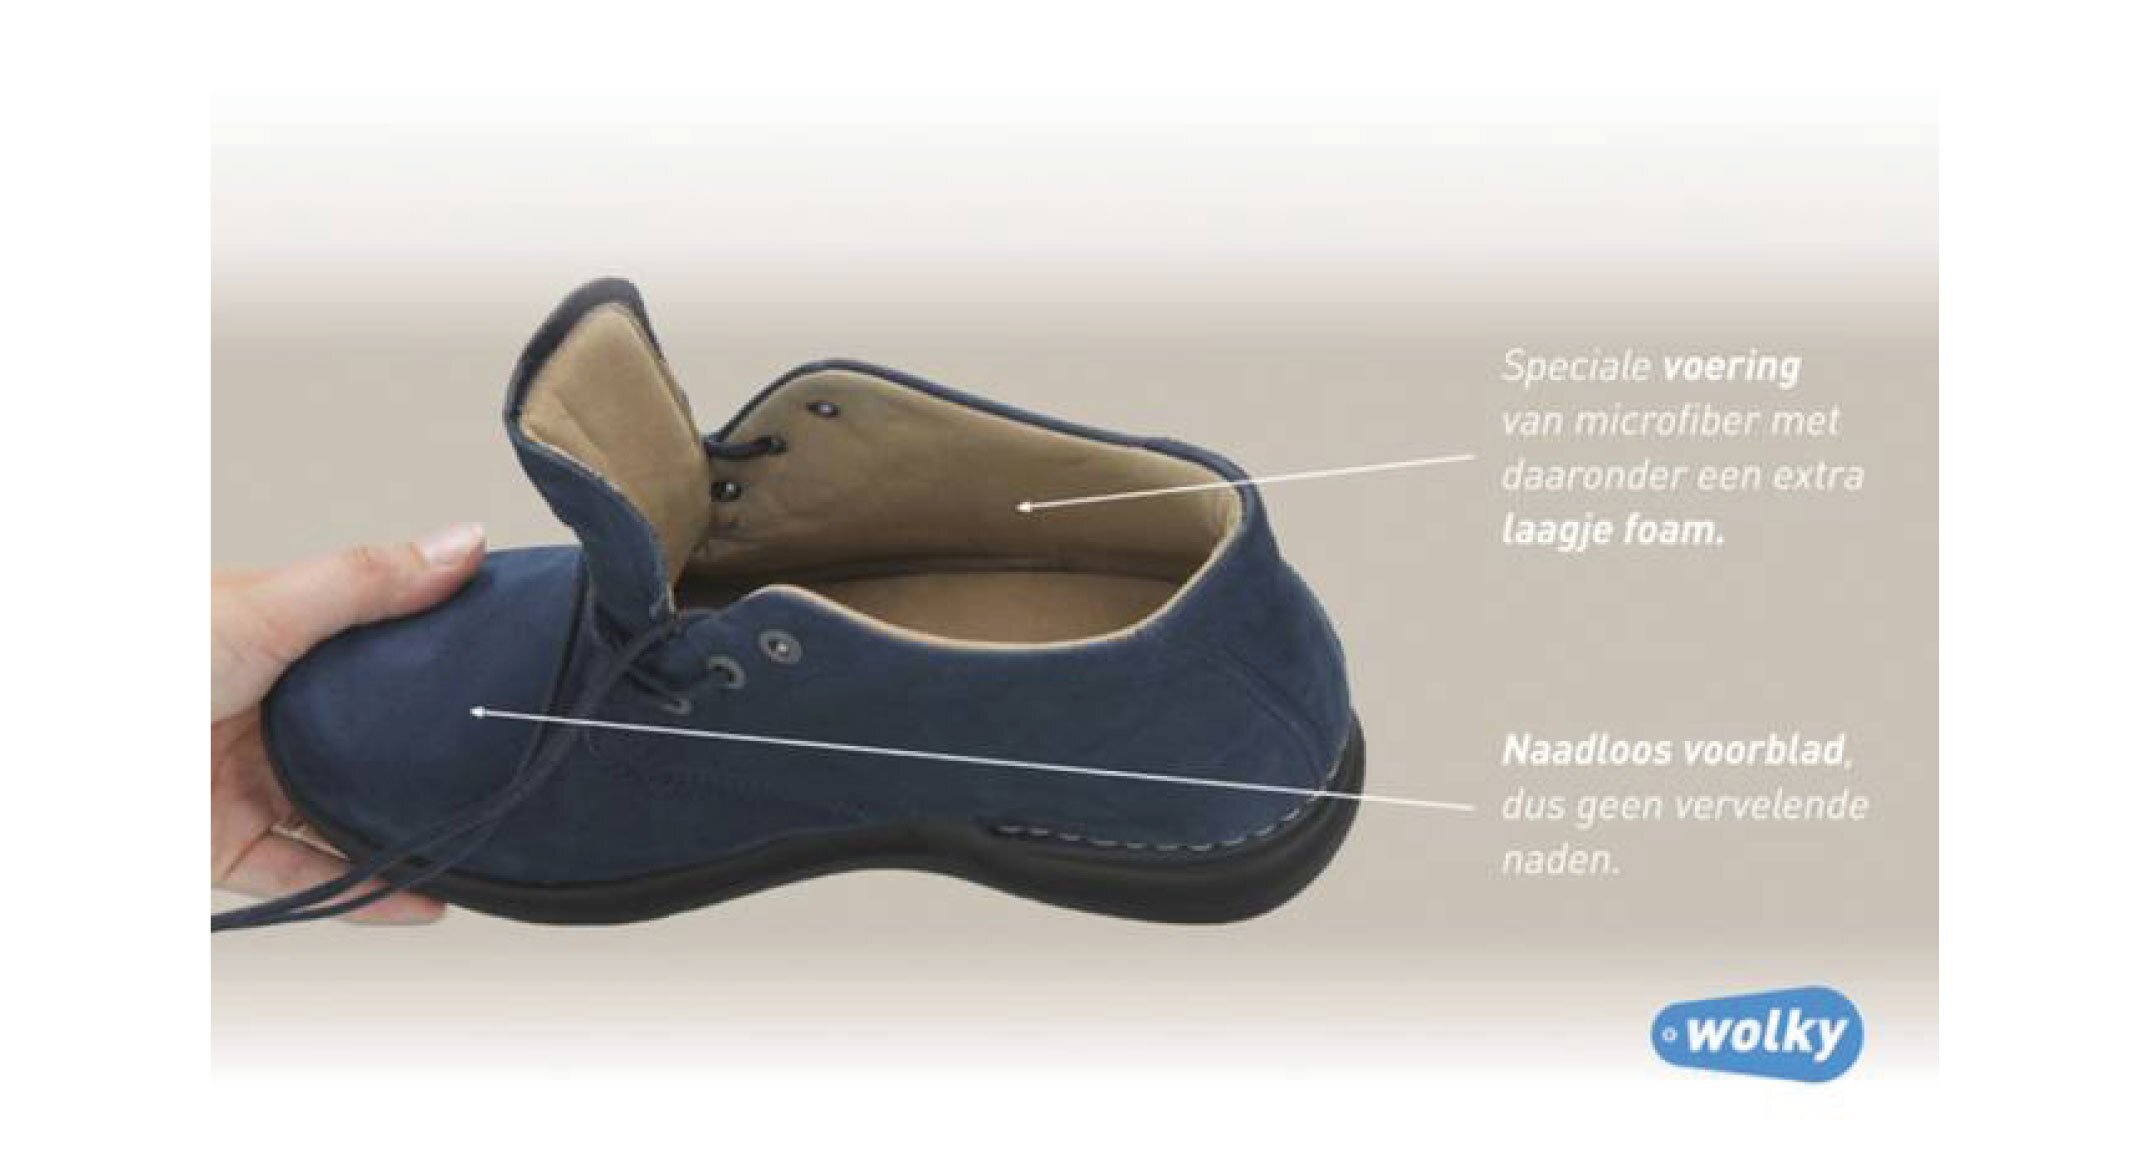 De nieuwe schoenencollectie van Wolky speciaal voor vrouwen met diabetes